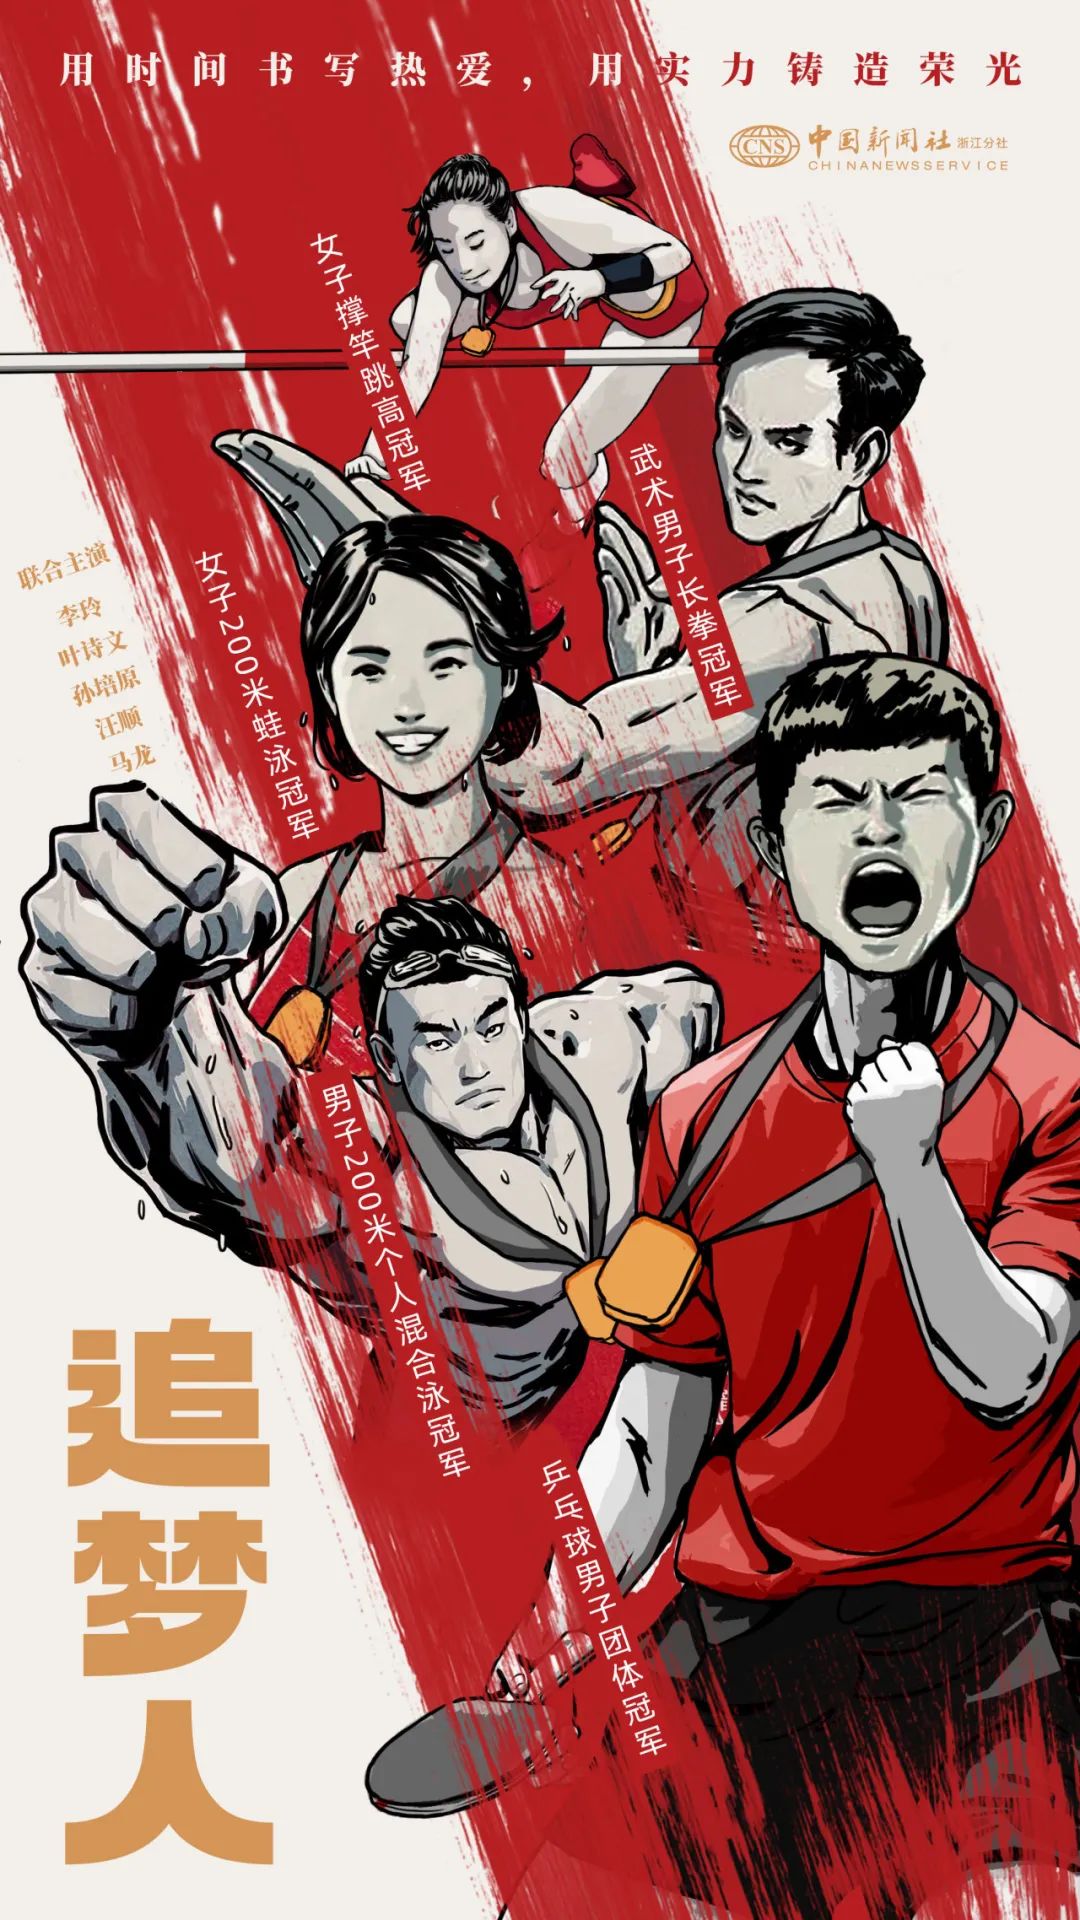 一组超燃海报,向亚运会运动员致敬!